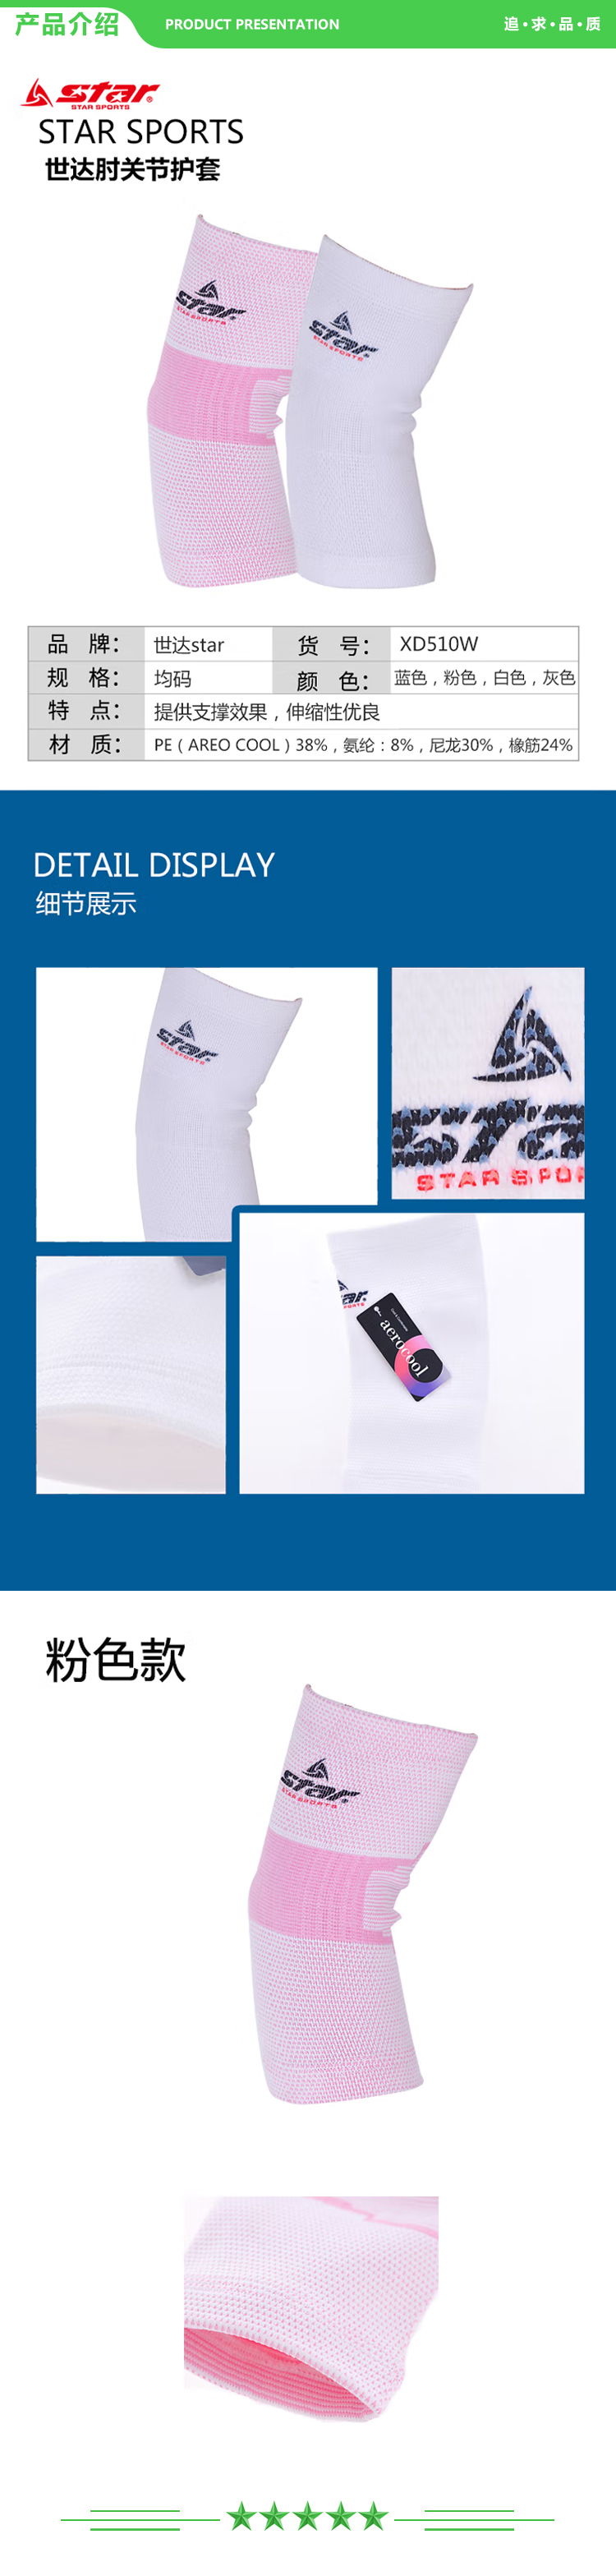 世达 star XD510W-13 粉色 均码 护肘运动护具防护保暖肘关节保护 一只装  .jpg